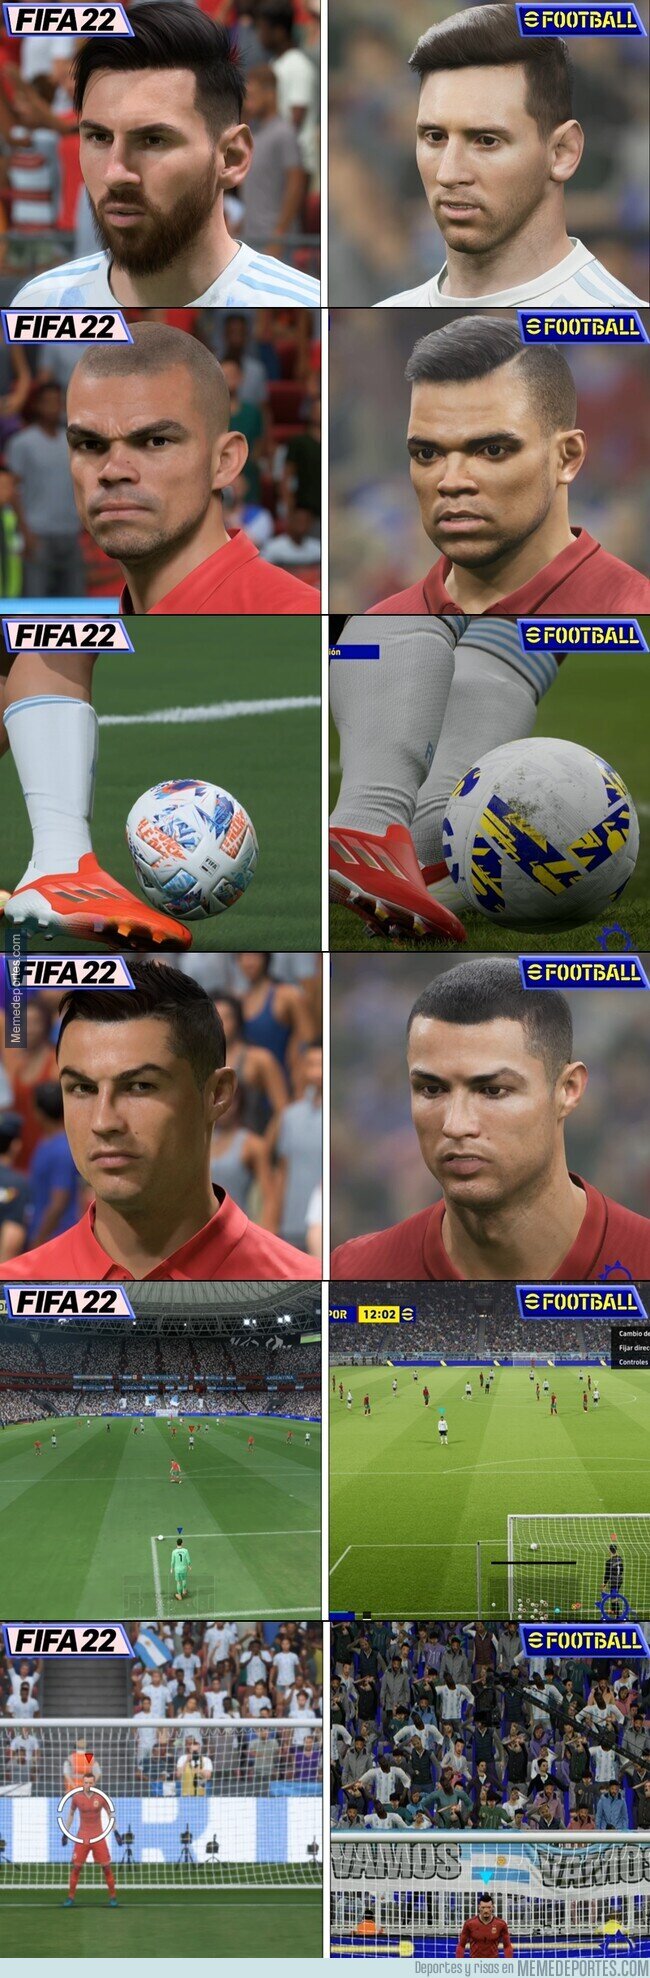 1146080 - Las principales diferencias entre FIFA 22 y eFootball, un poco más objetivos